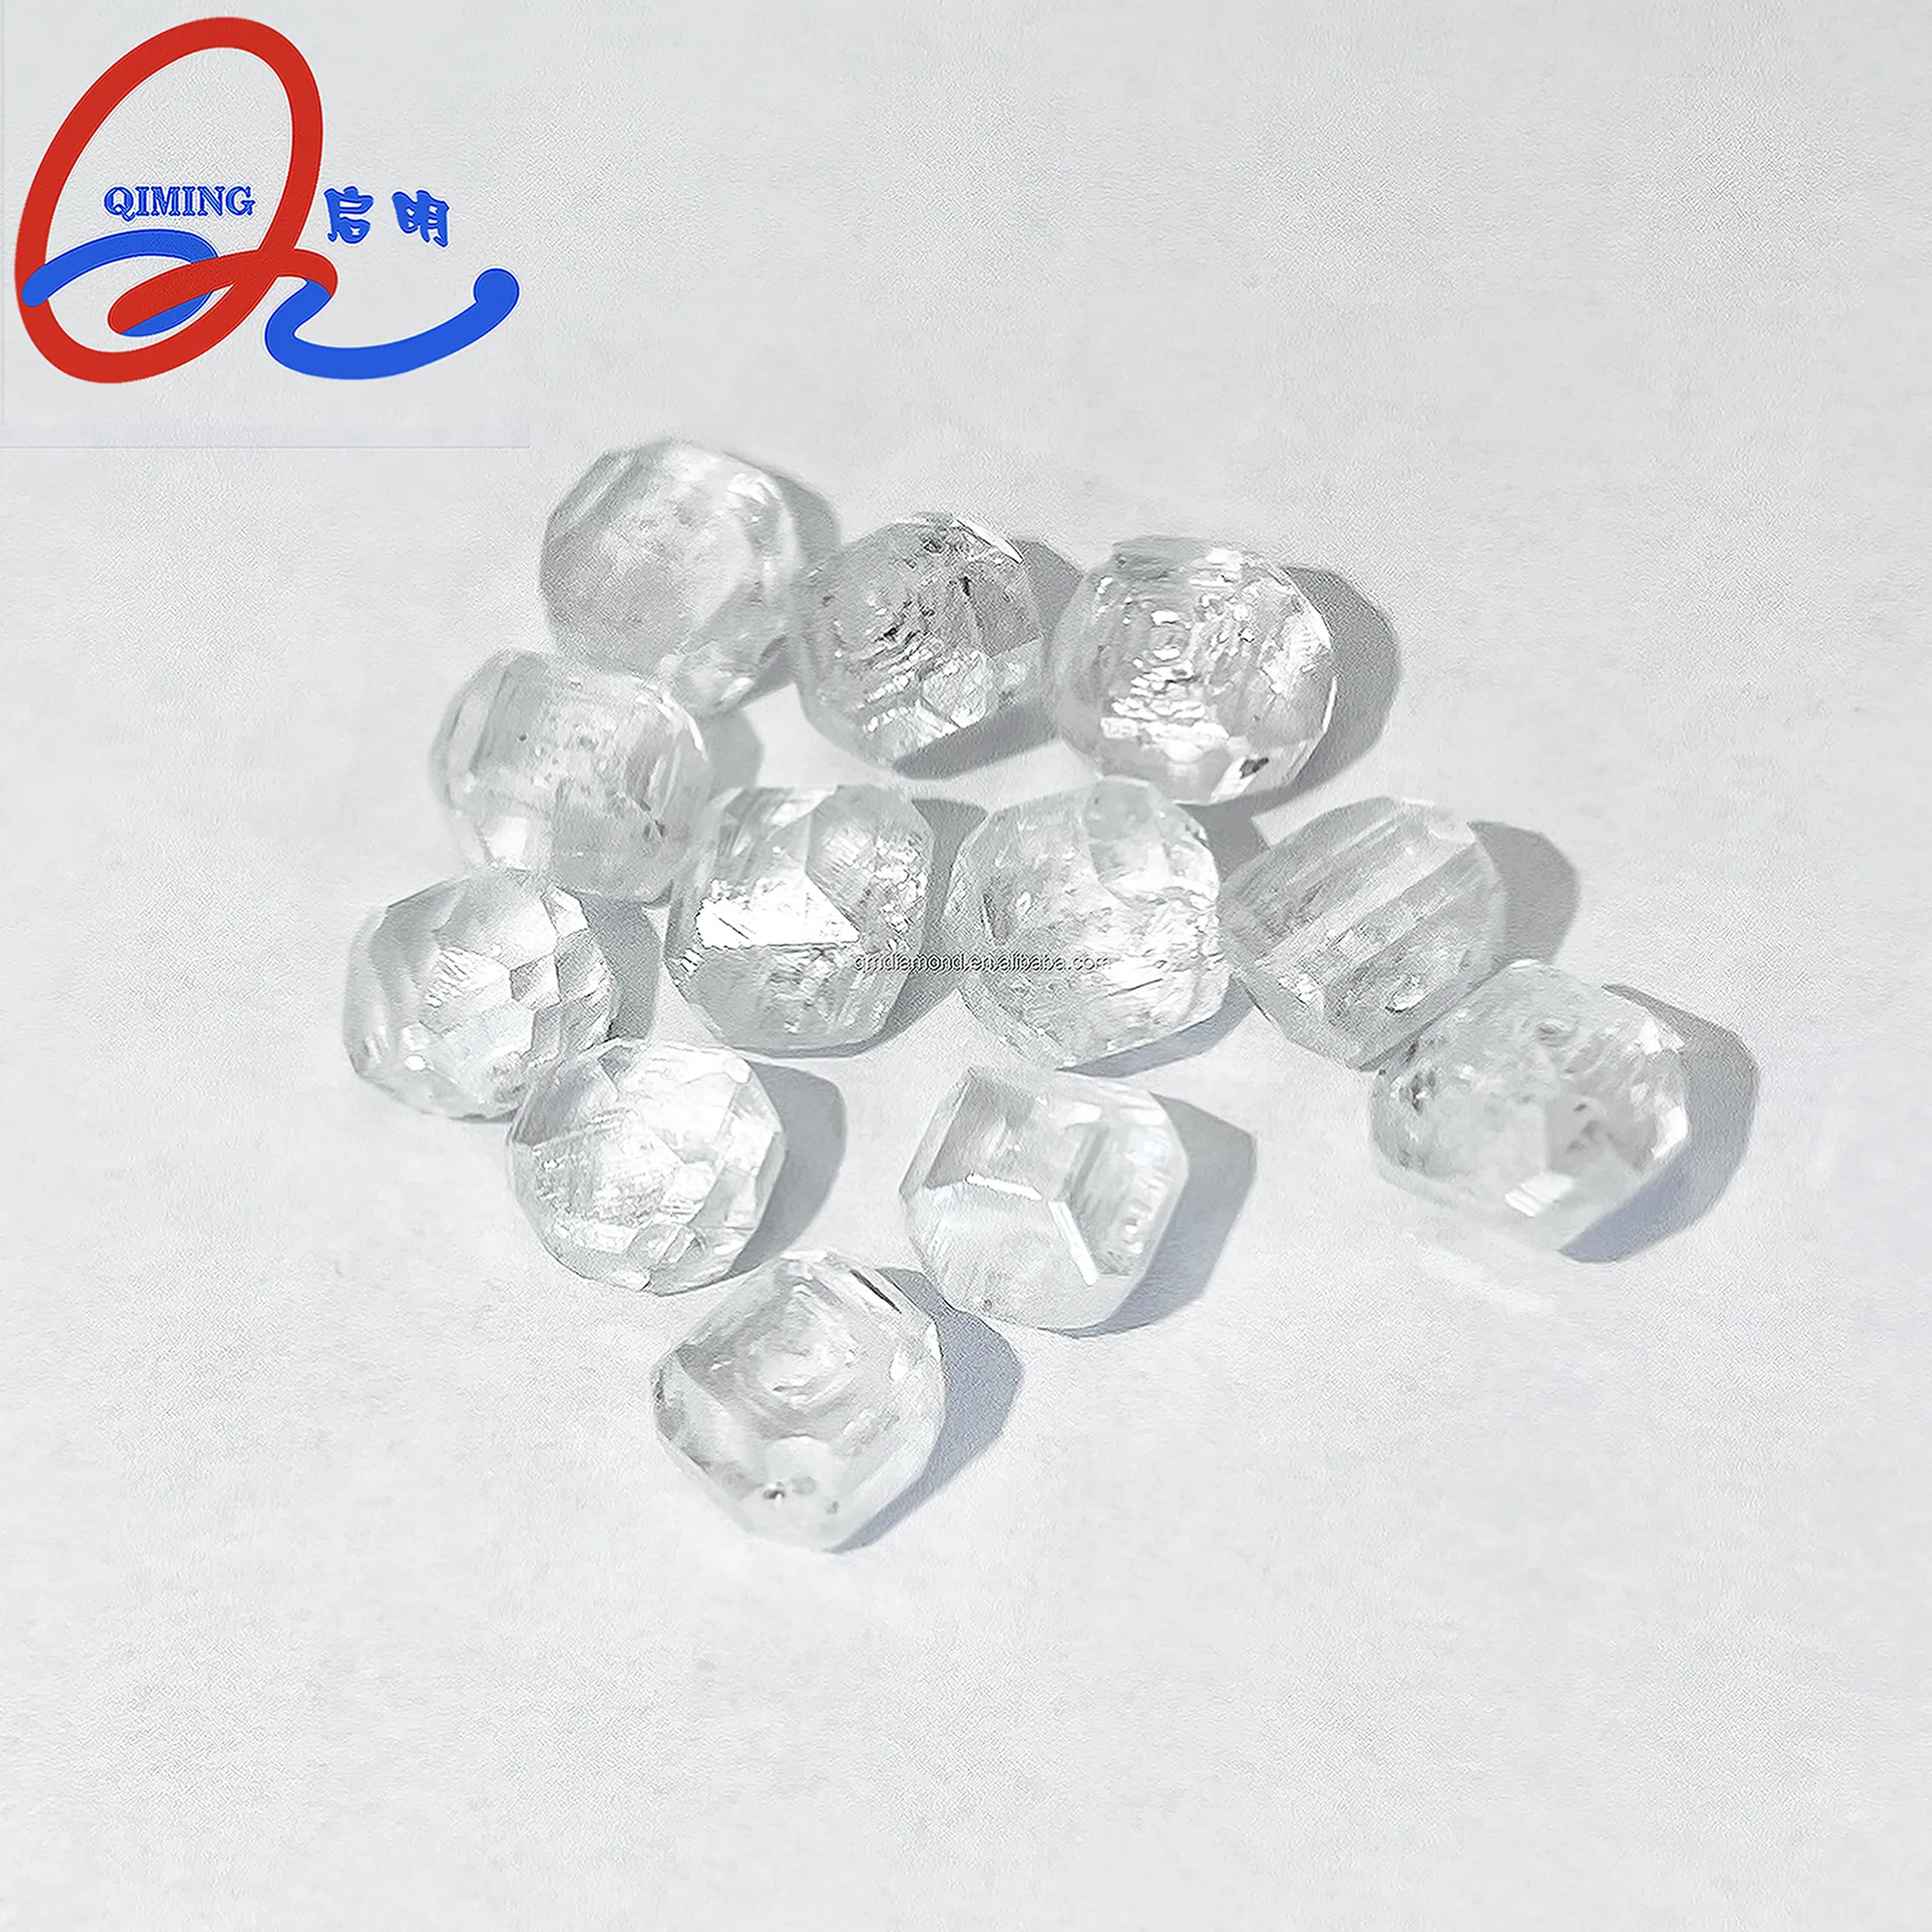 Le meilleur fournisseur chinois de diamant brut synthétique blanc Hpht